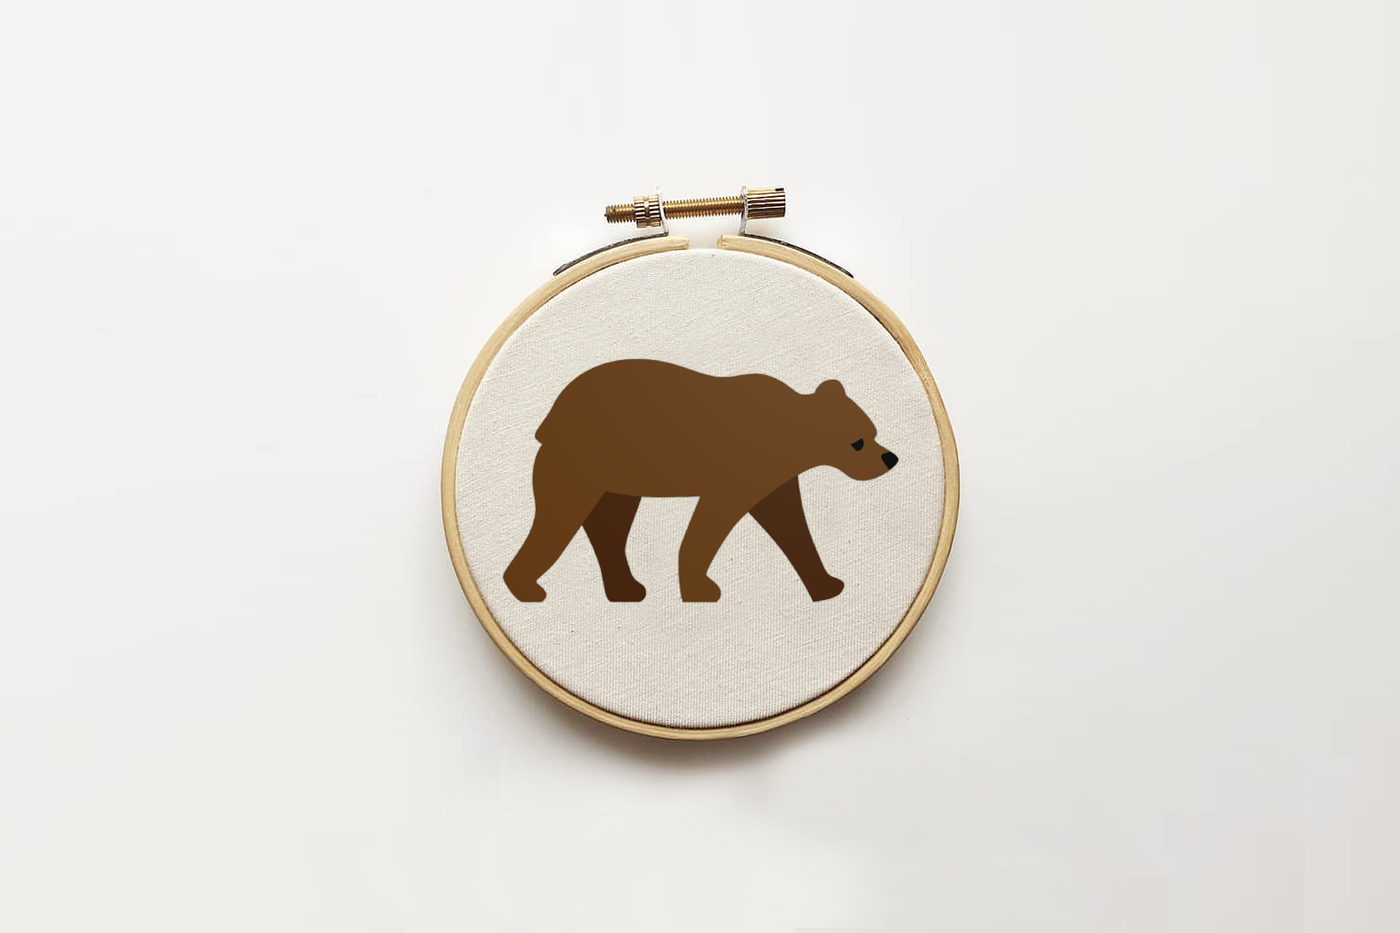 Walking bear design